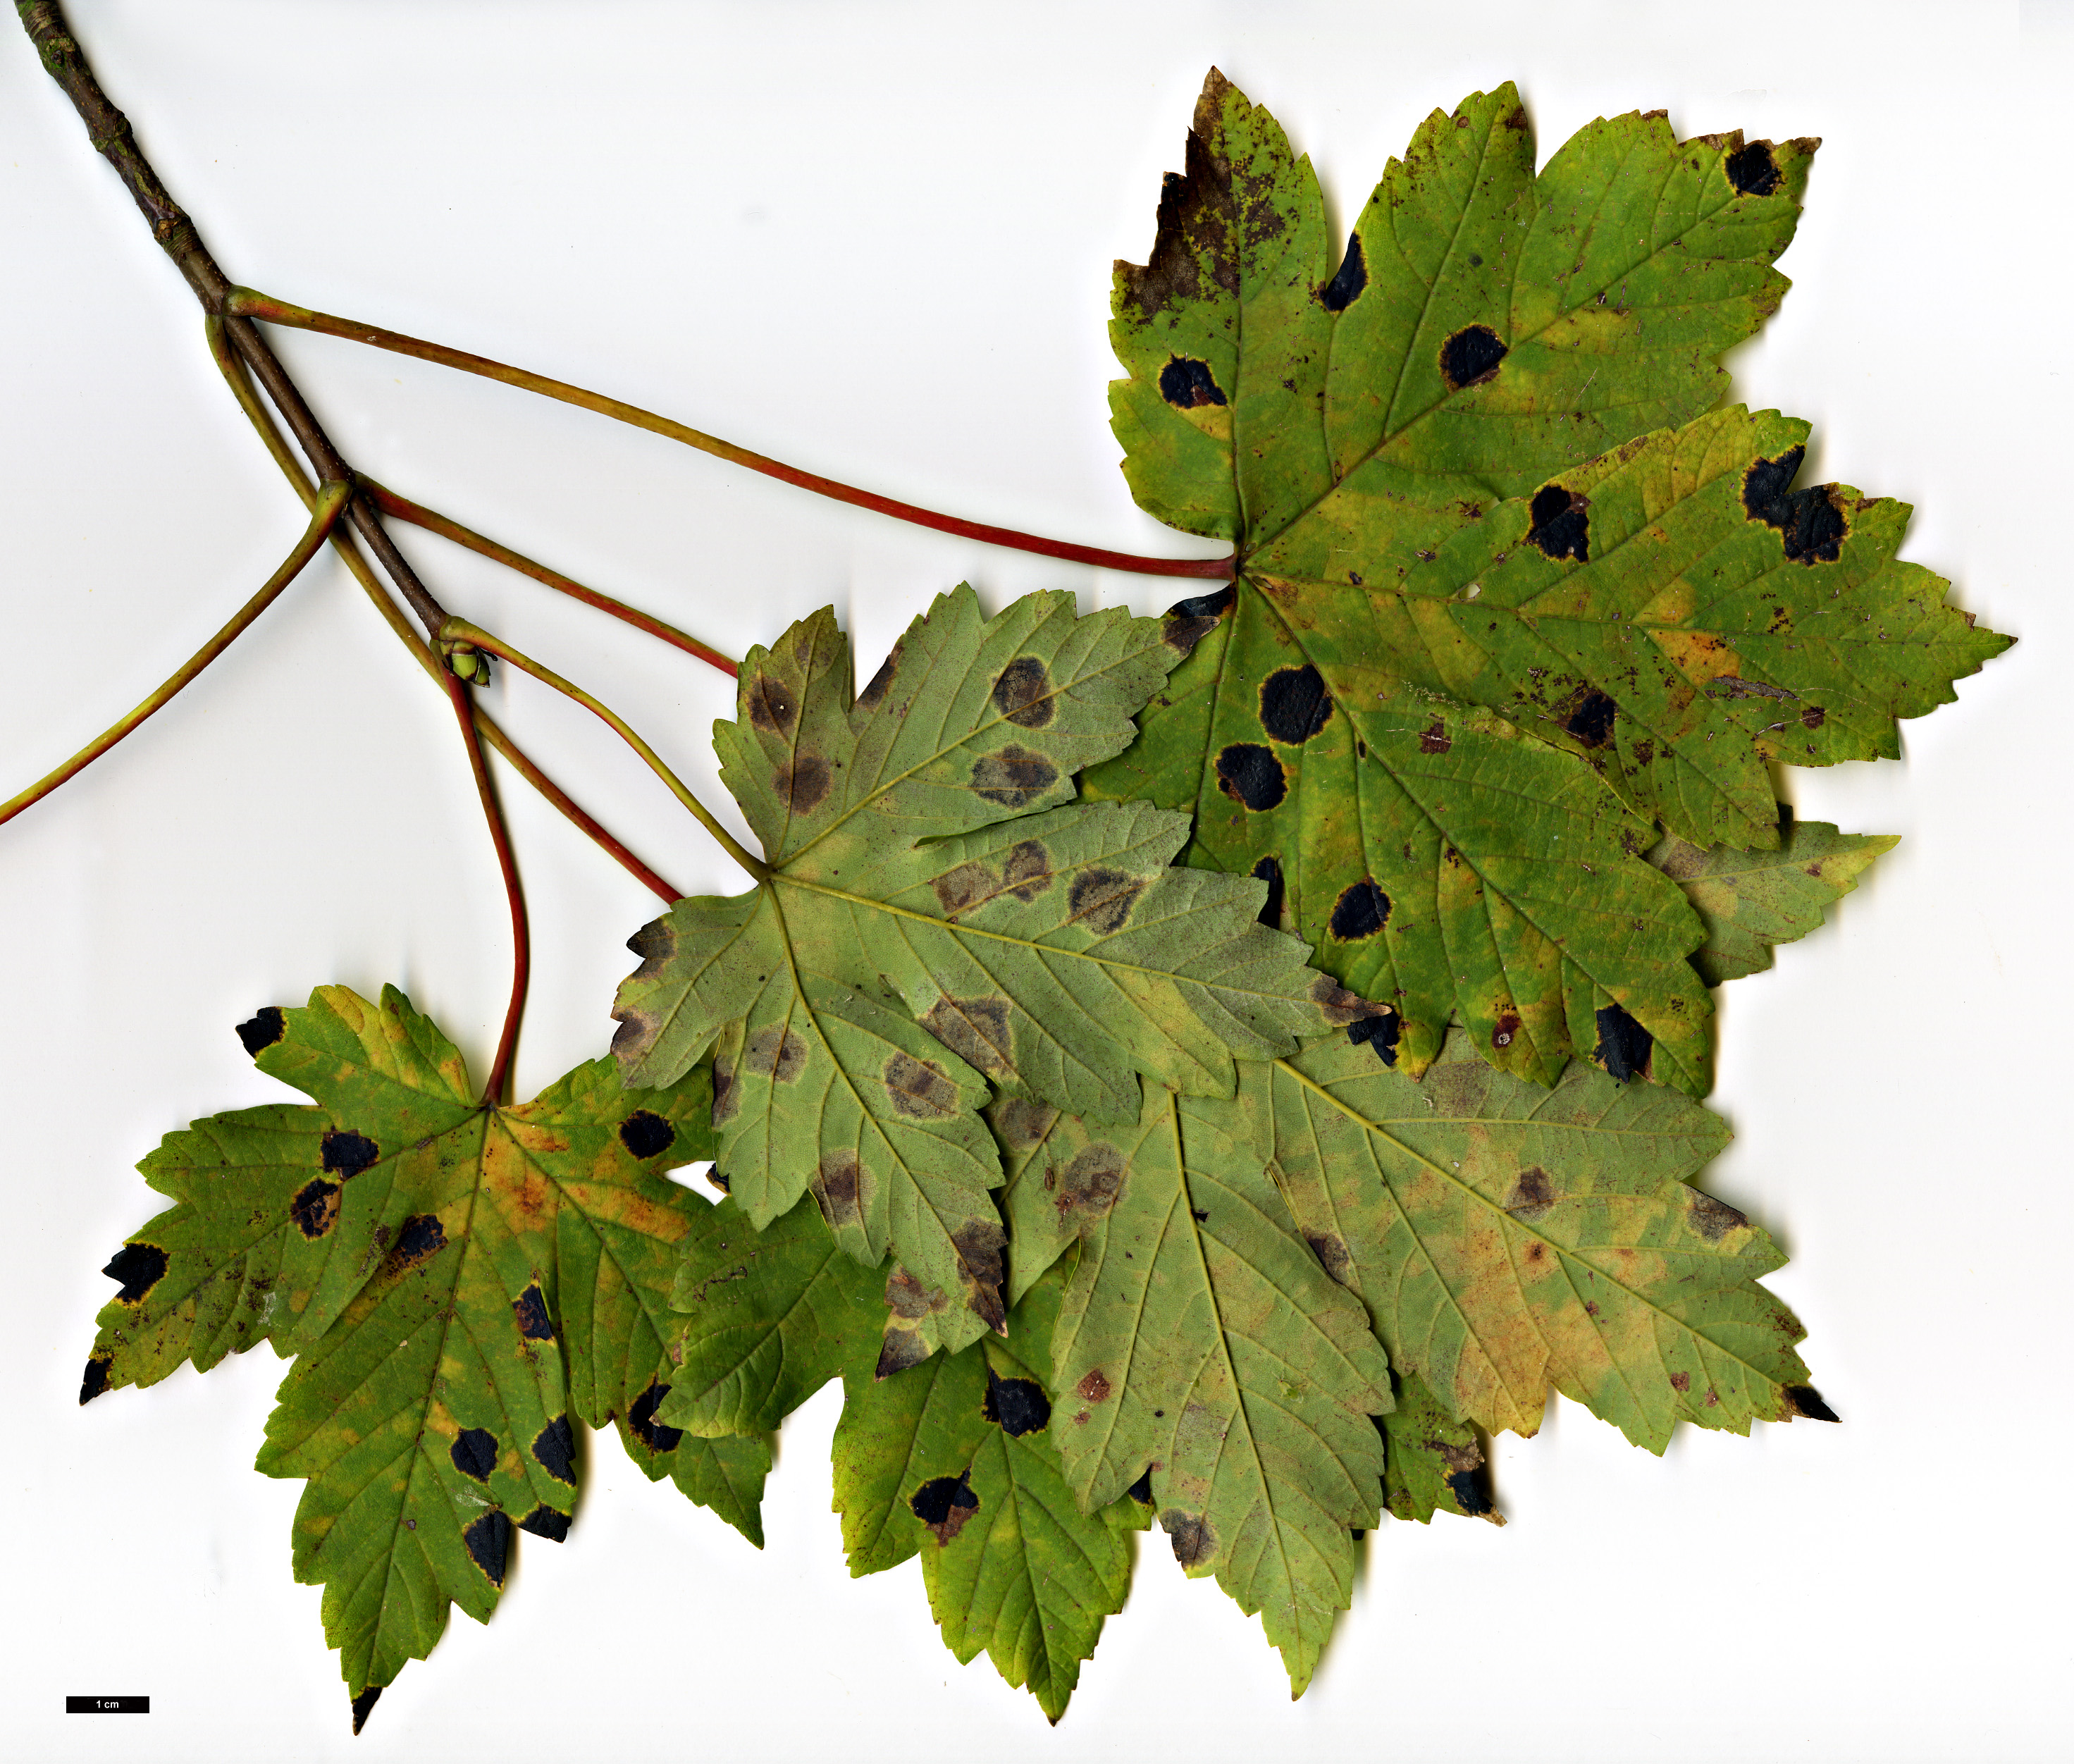 High resolution image: Family: Sapindaceae - Genus: Acer - Taxon: heldreichii